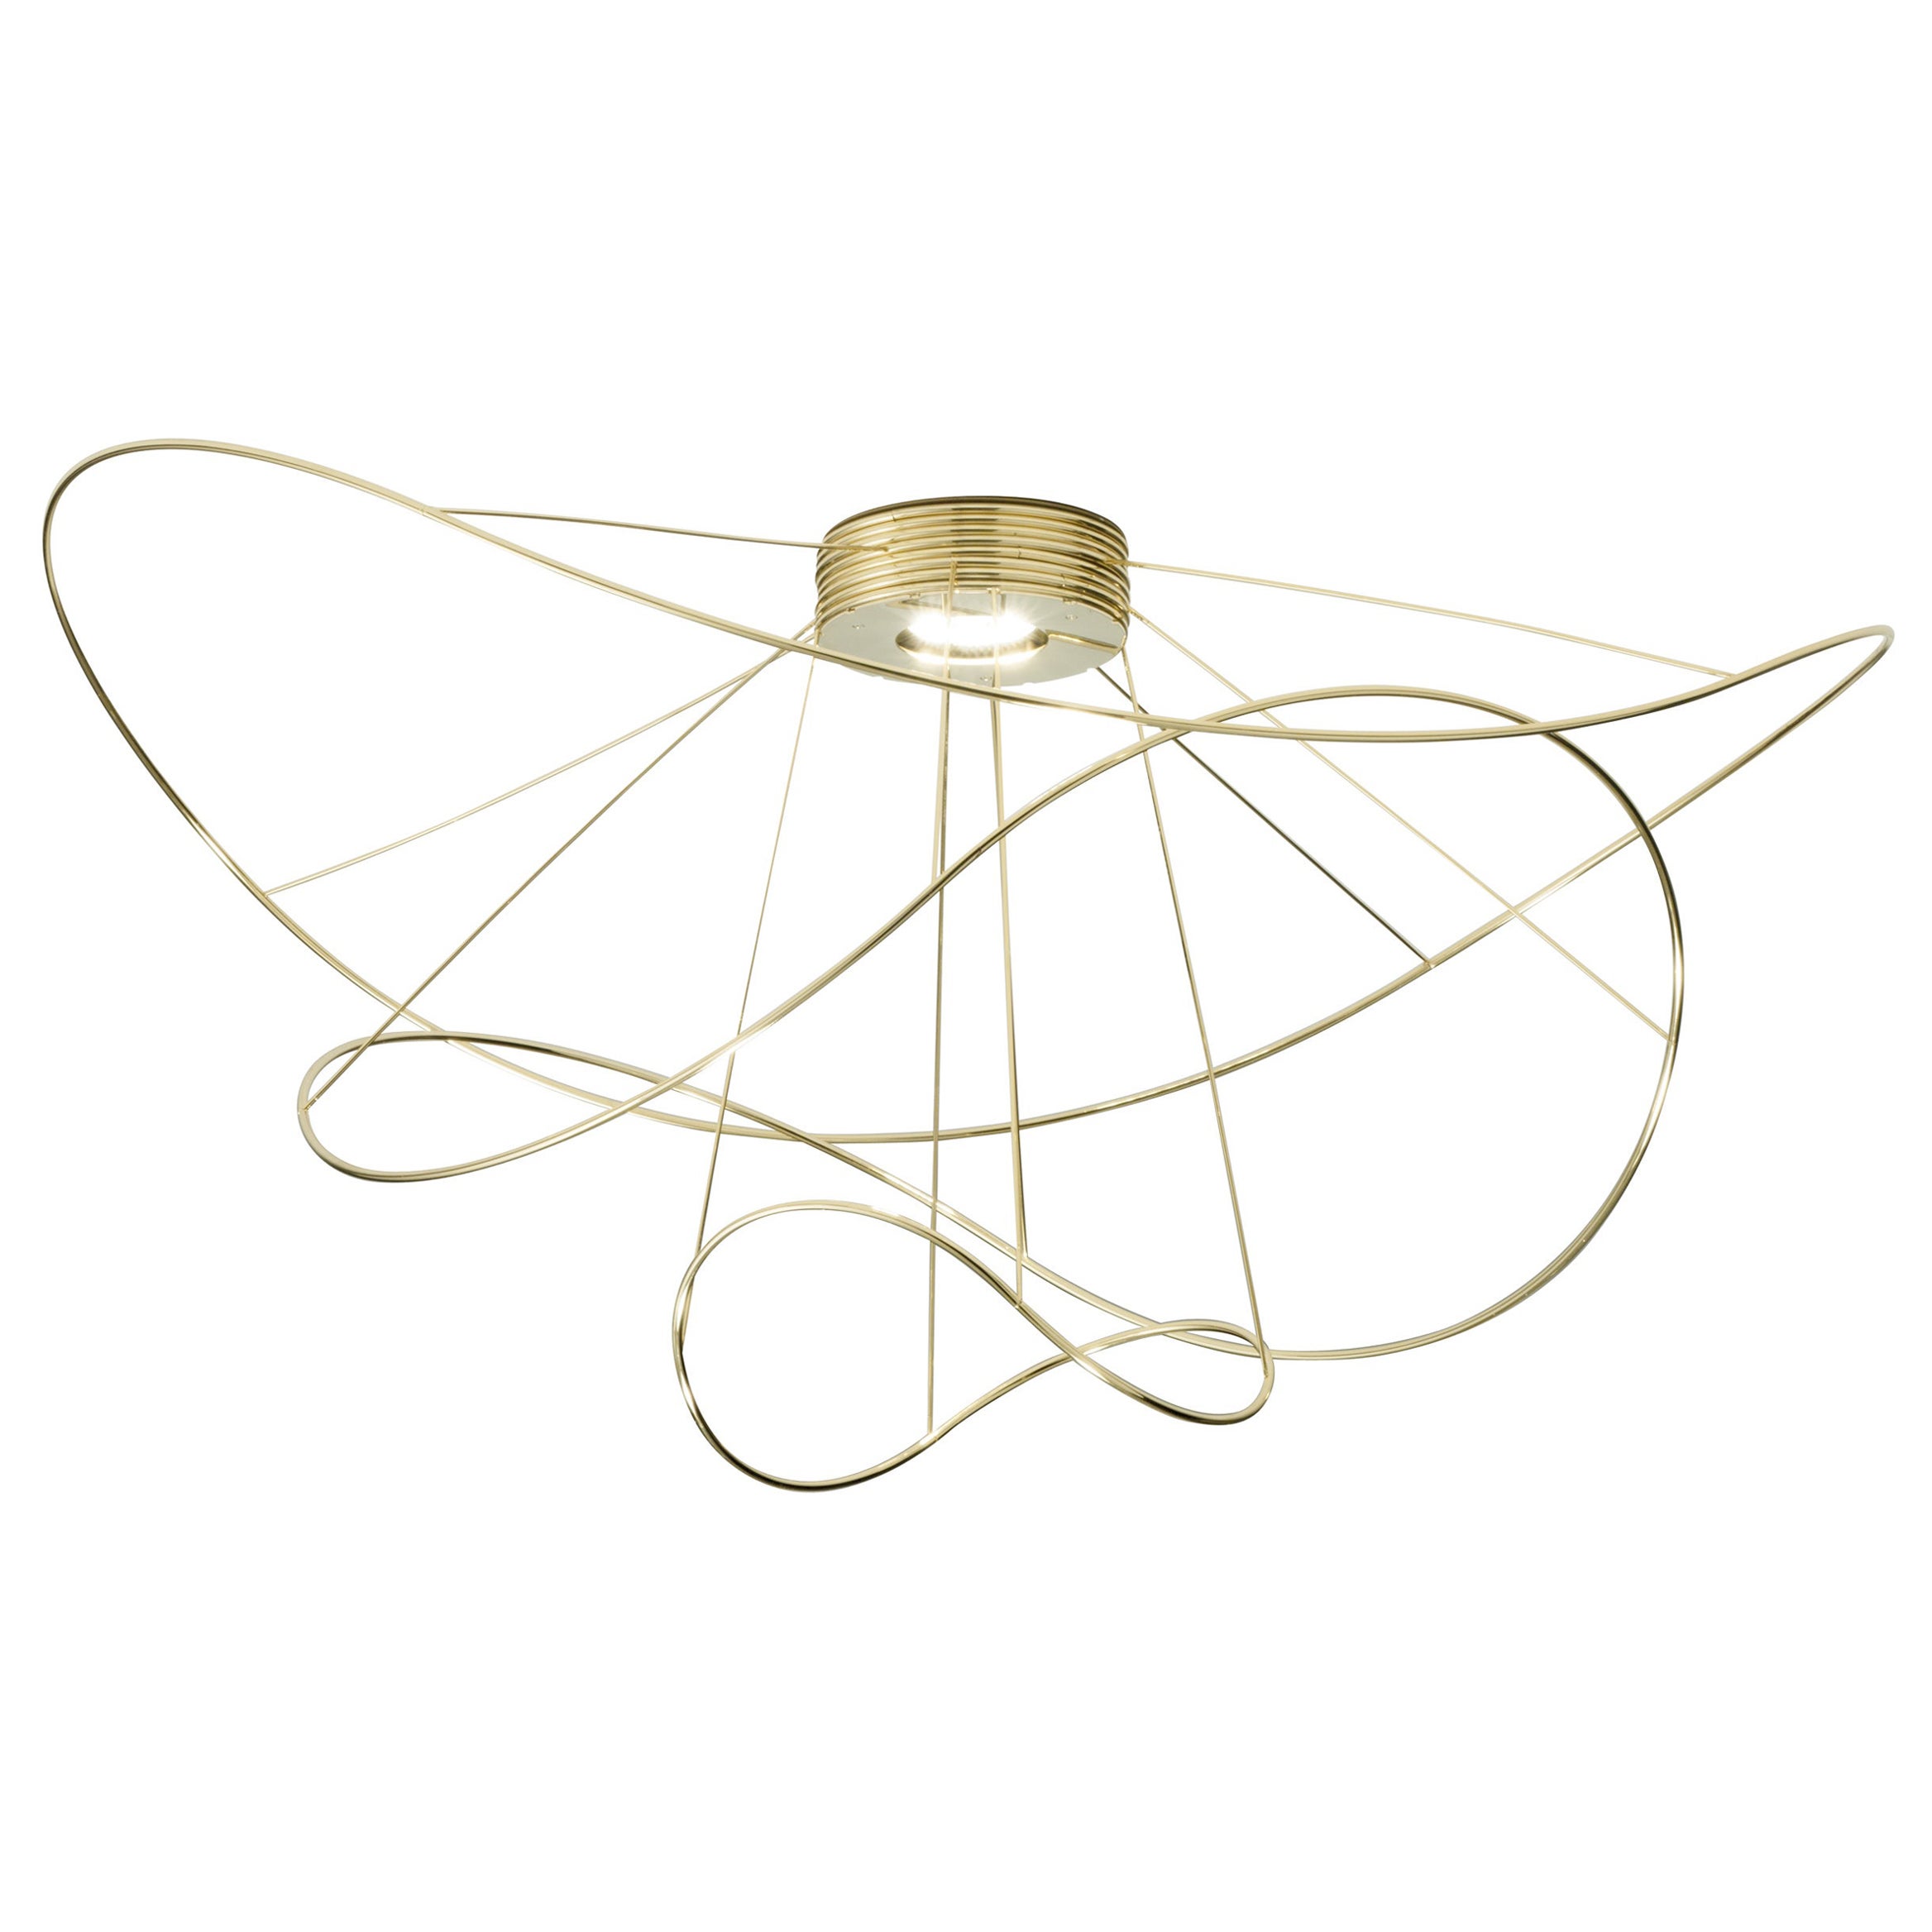 Axolight Hoops 3 Medium Einbau-Deckenleuchte in Gold von Giovanni Barbato, Einbaubeleuchtung